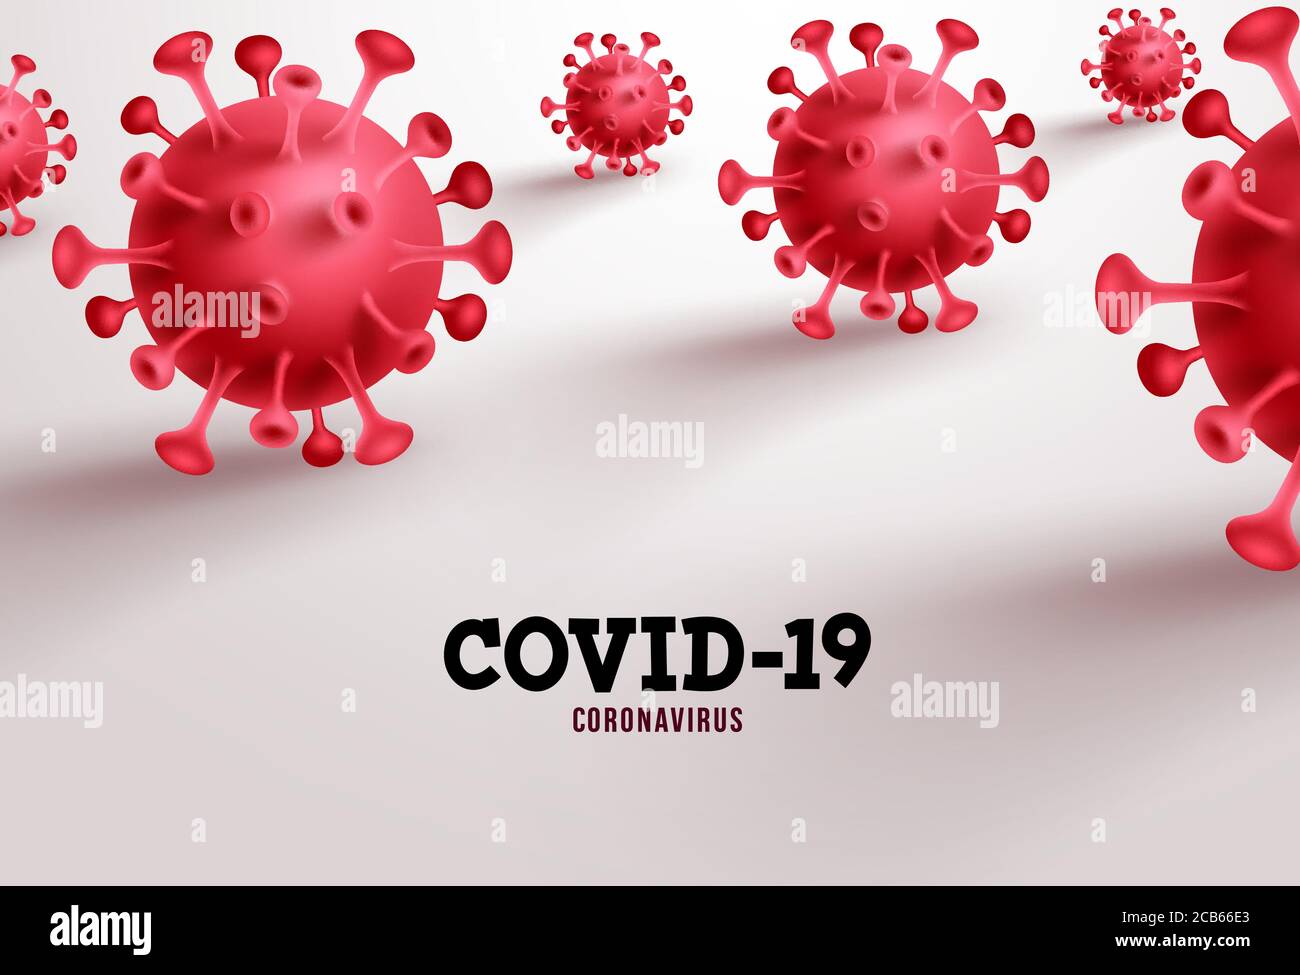 Covid-19 Vektorbanner Hintergrund. Coronavirus und covid-19-Text in leerem Raum auf weißem Hintergrund für sars ncov-Viruspandemie. Vektorgrafik. Stock Vektor